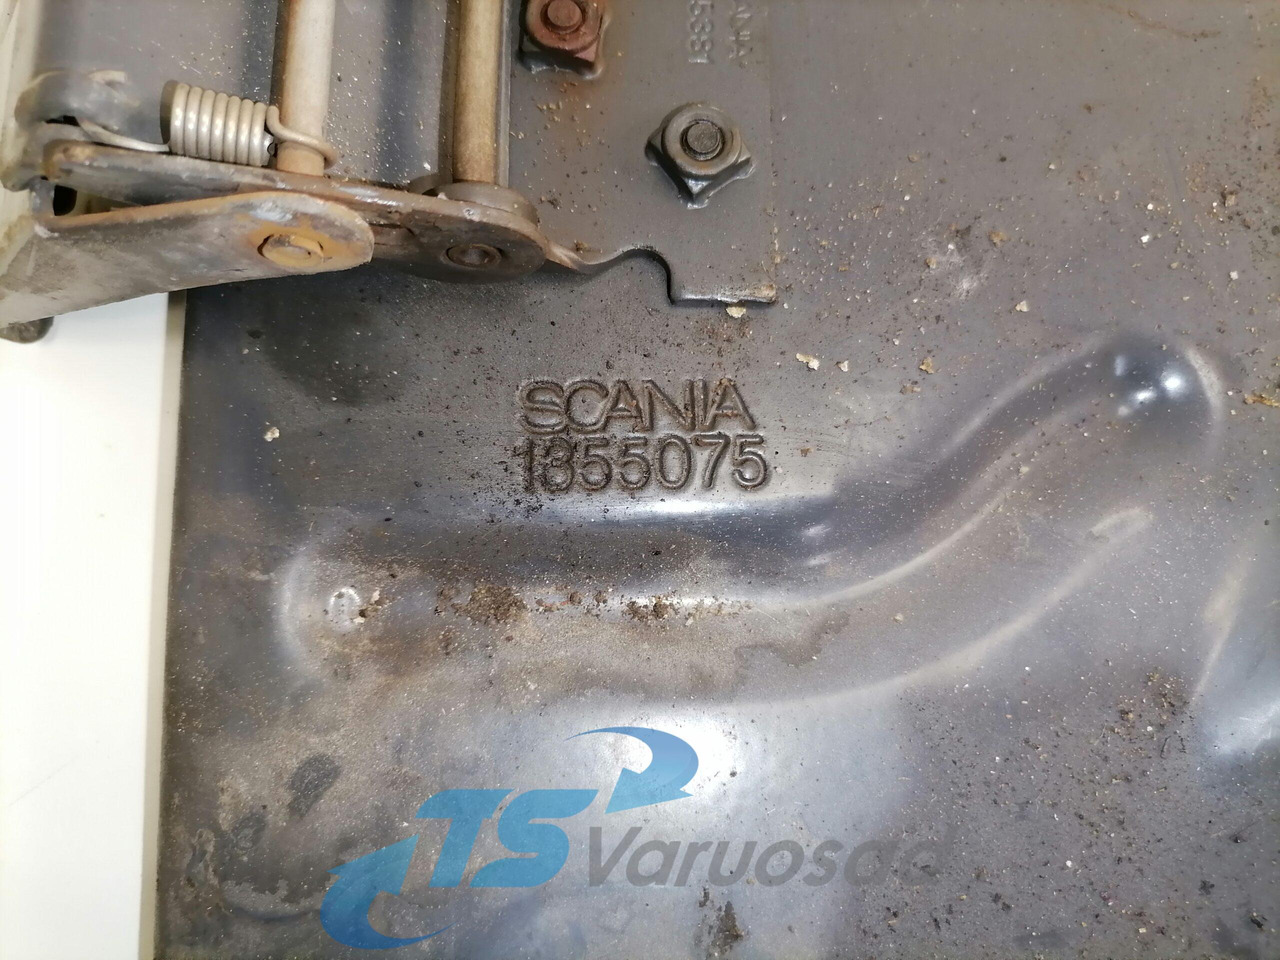 Γενικό ανταλλακτικό για Φορτηγό Scania Mudguard bracket 1355075: φωτογραφία 4